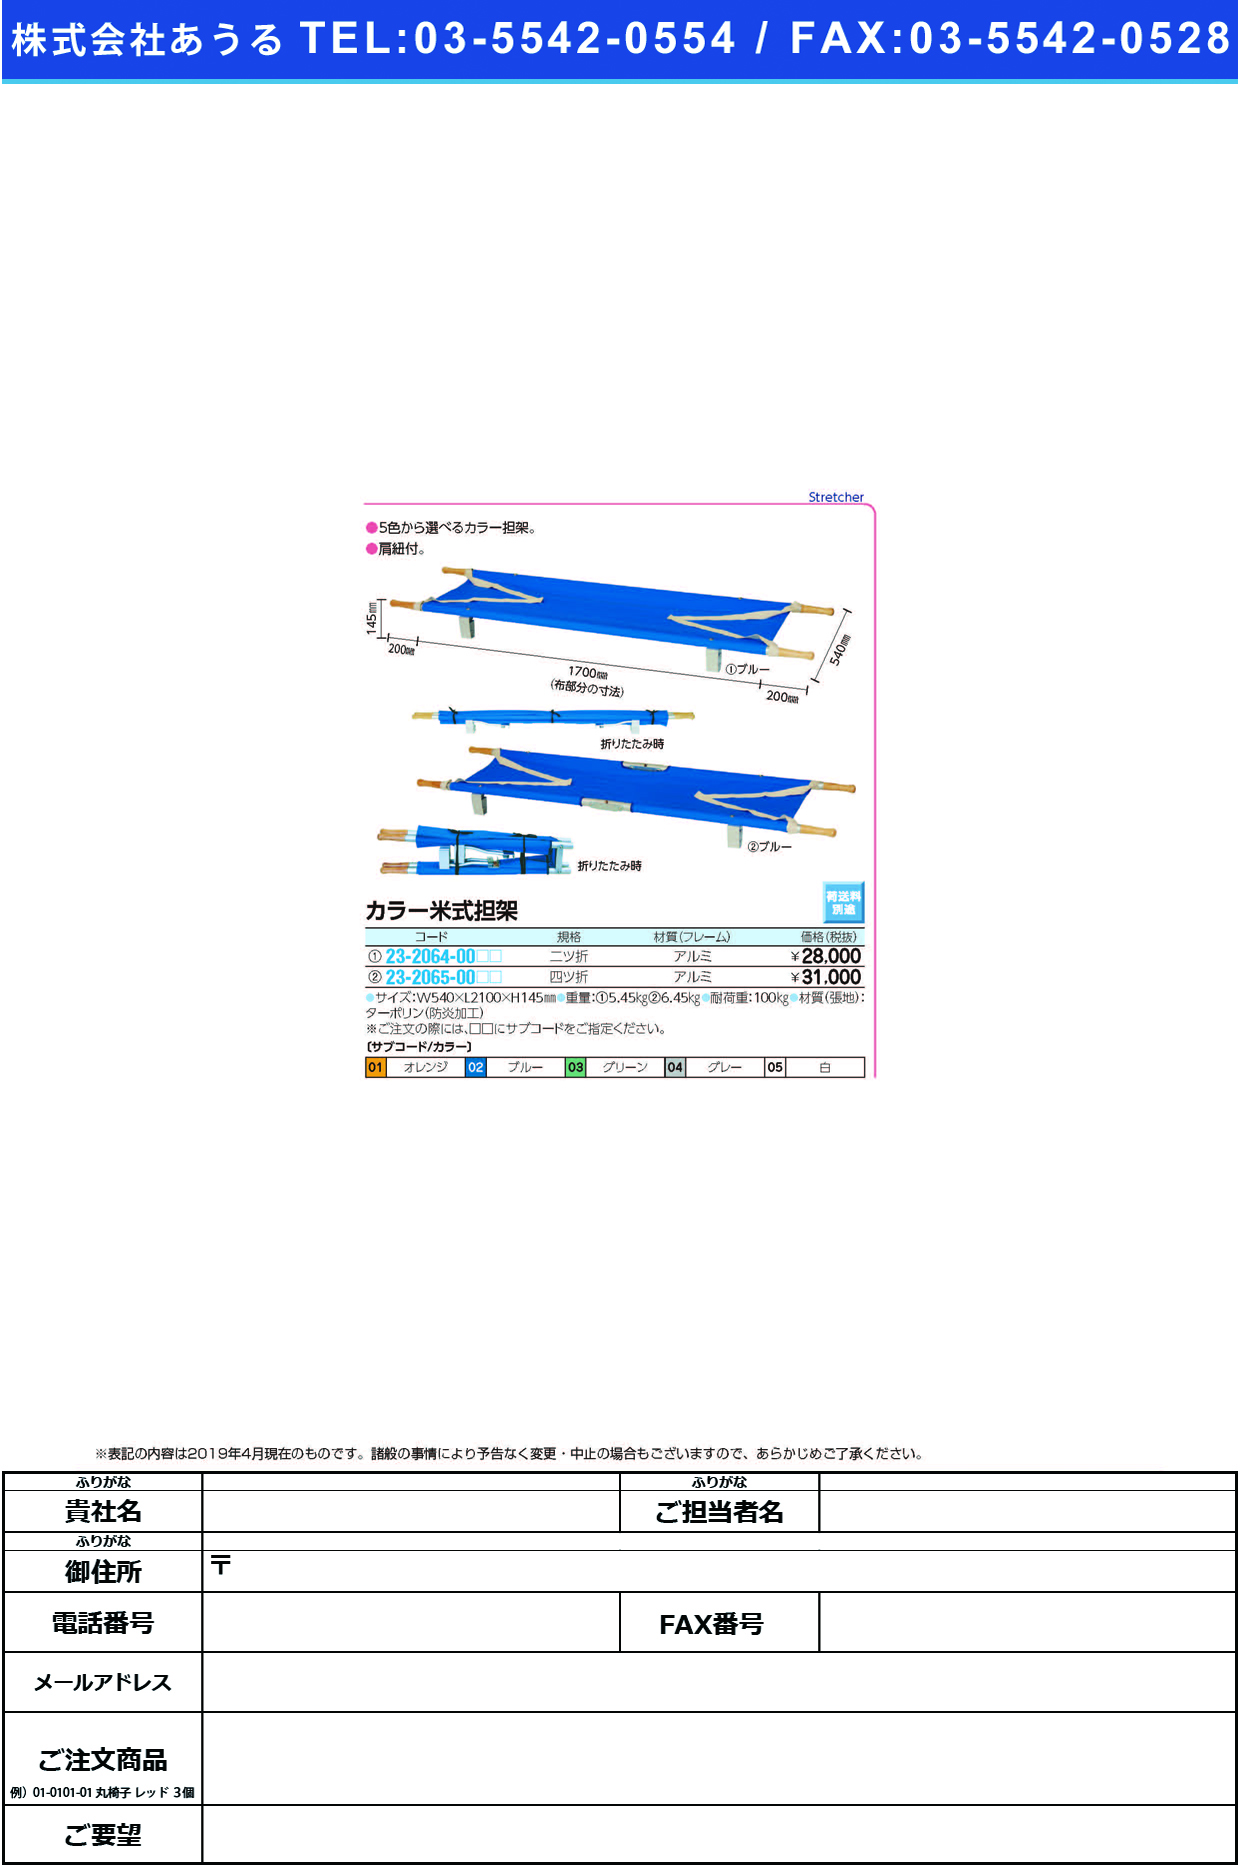 (23-2064-00)カラー米式担架（ニツ折） YS-38-A-T ｶﾗｰﾍﾞｲｼｷﾀﾝｶ(2ﾂｵﾘ) ブルー【1台単位】【2019年カタログ商品】